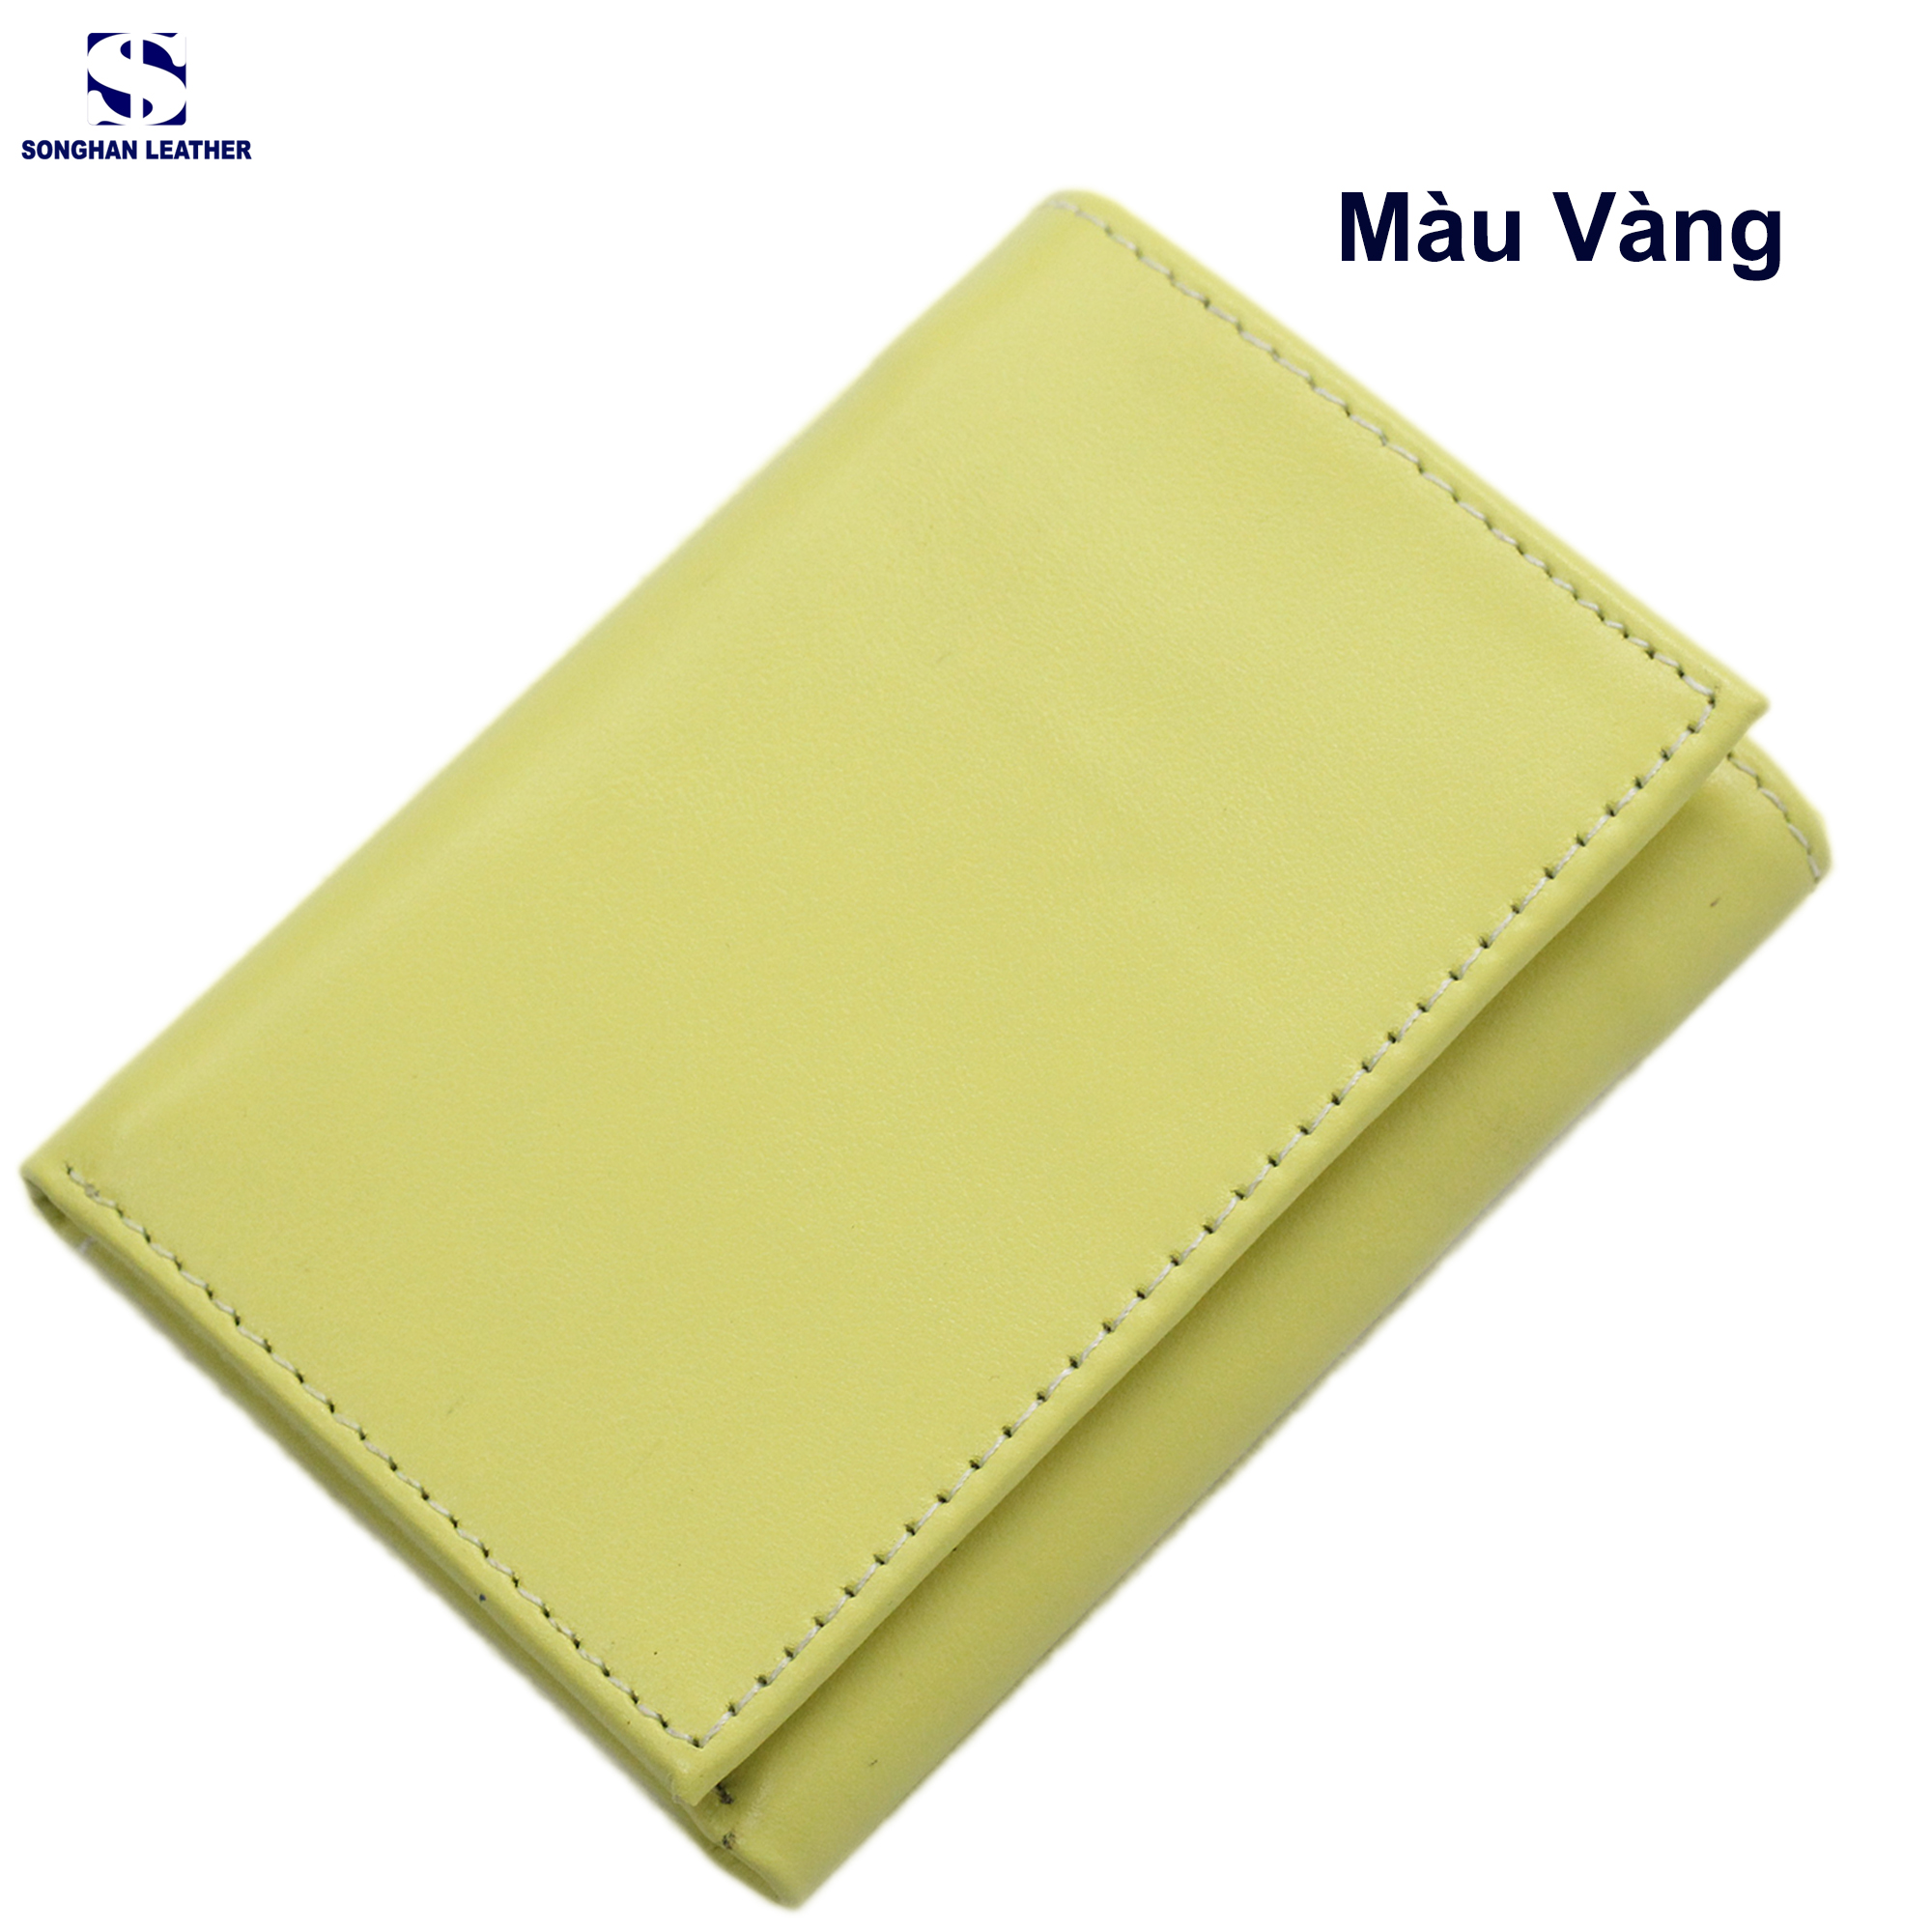 Ví Gập Ba Nam Nữ Da Bò Songhan Leather VN01 – Nhỏ Gọn Tiện Lợi Đa Năng.Bảo Hành 12 Tháng